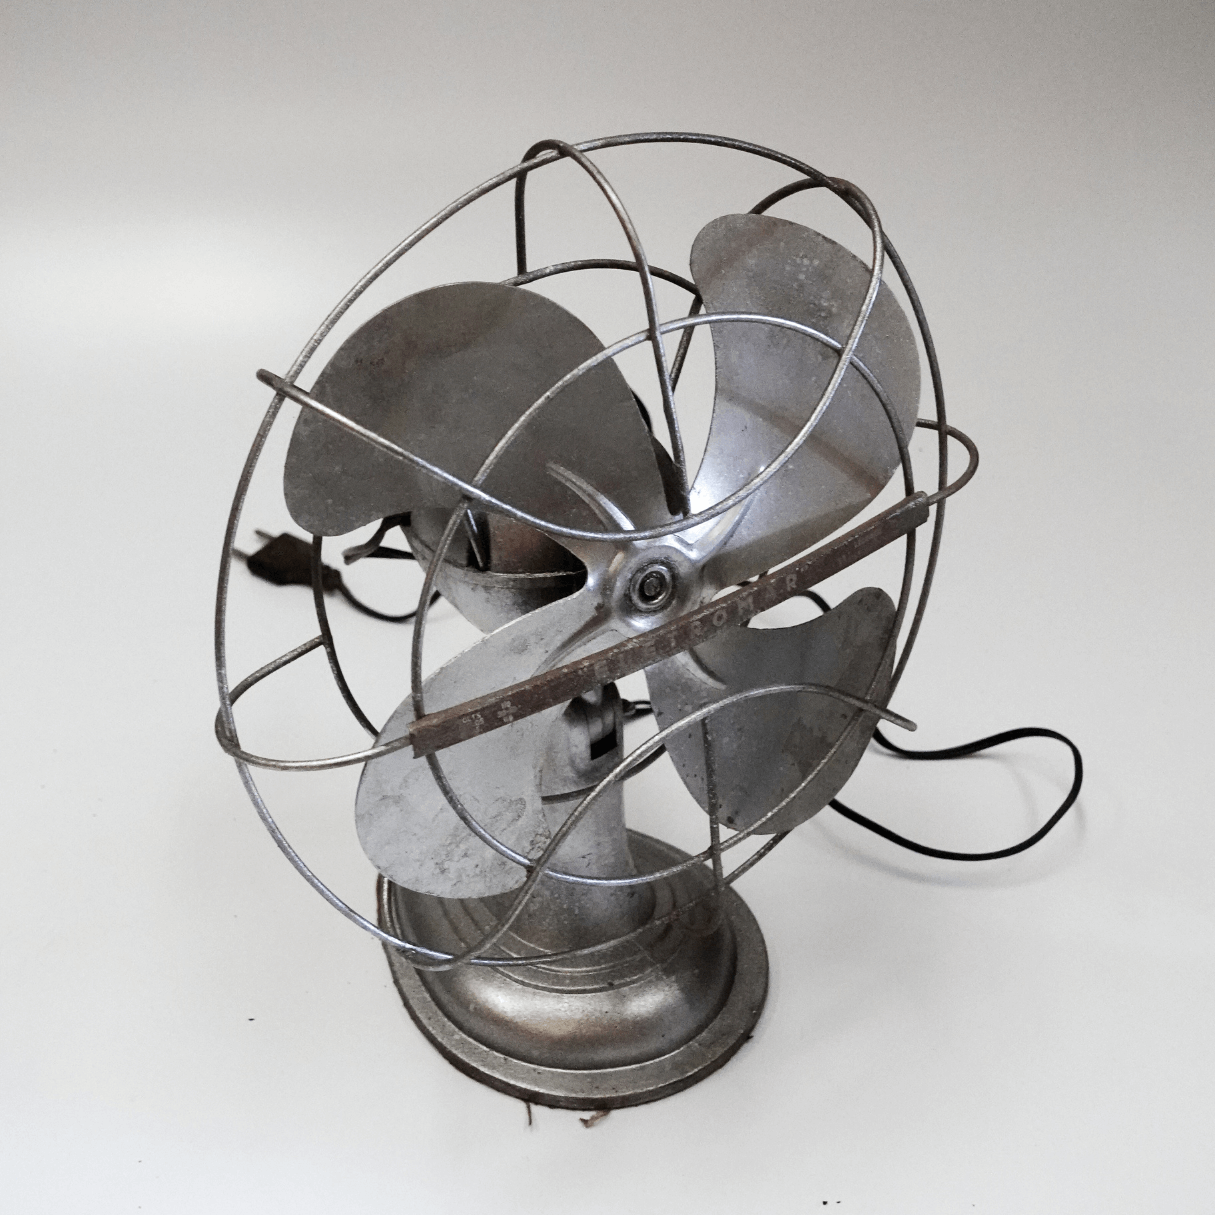 Ventilador Westinghouse Eletromar dos anos 1950 - Design Futurista